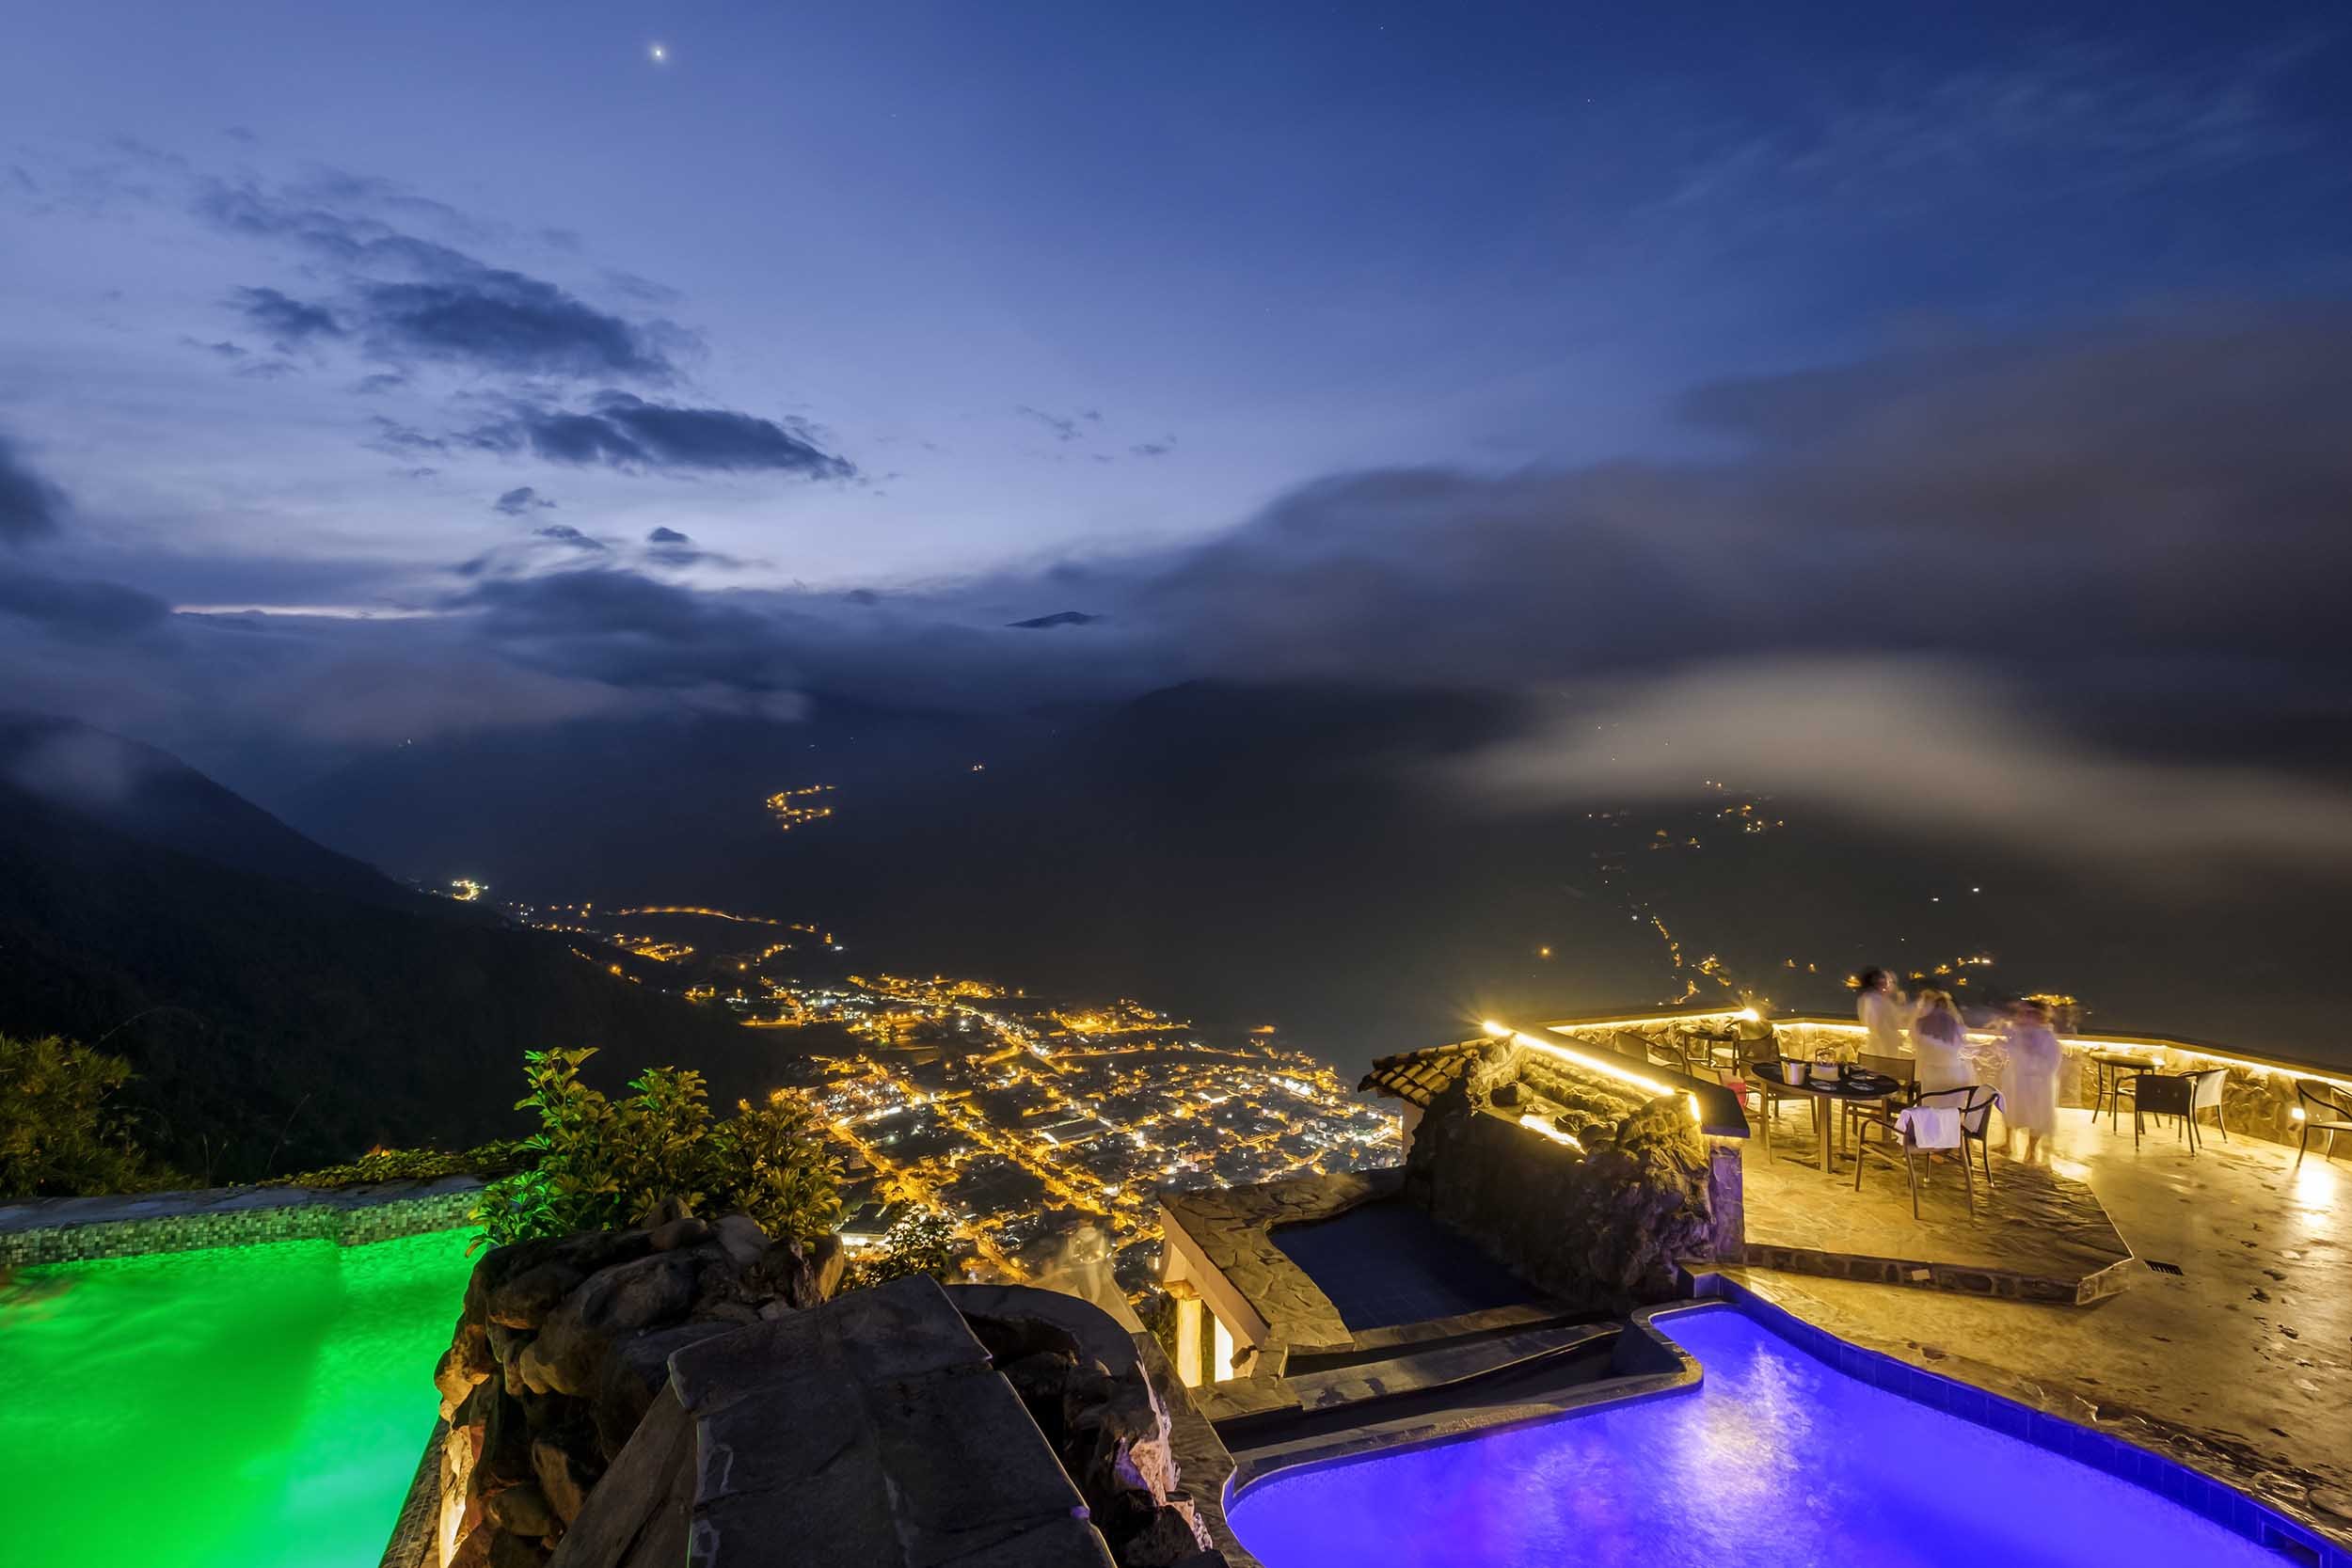 Pools and view of Banos - Luna Volcan - Hotel in Banos Ecuador.jpg